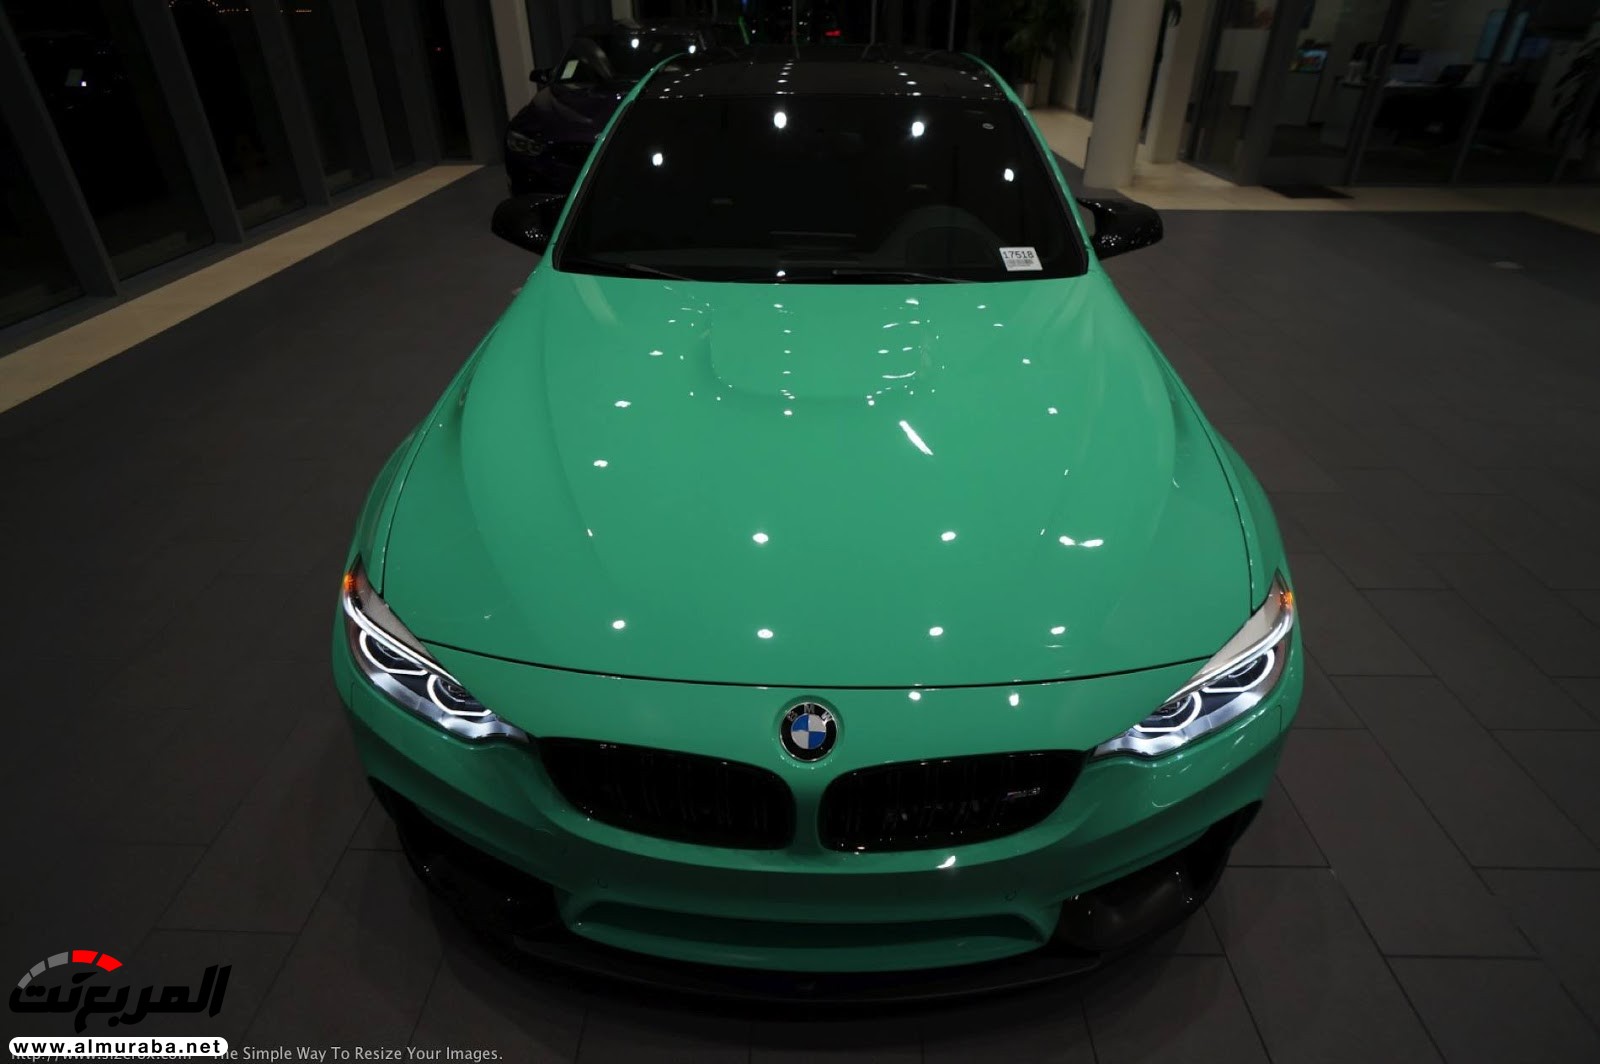 "بالصور" شاهد "بي إم دبليو" F80 M3 الخاصة بطلاء النعناع الأخضر BMW 112